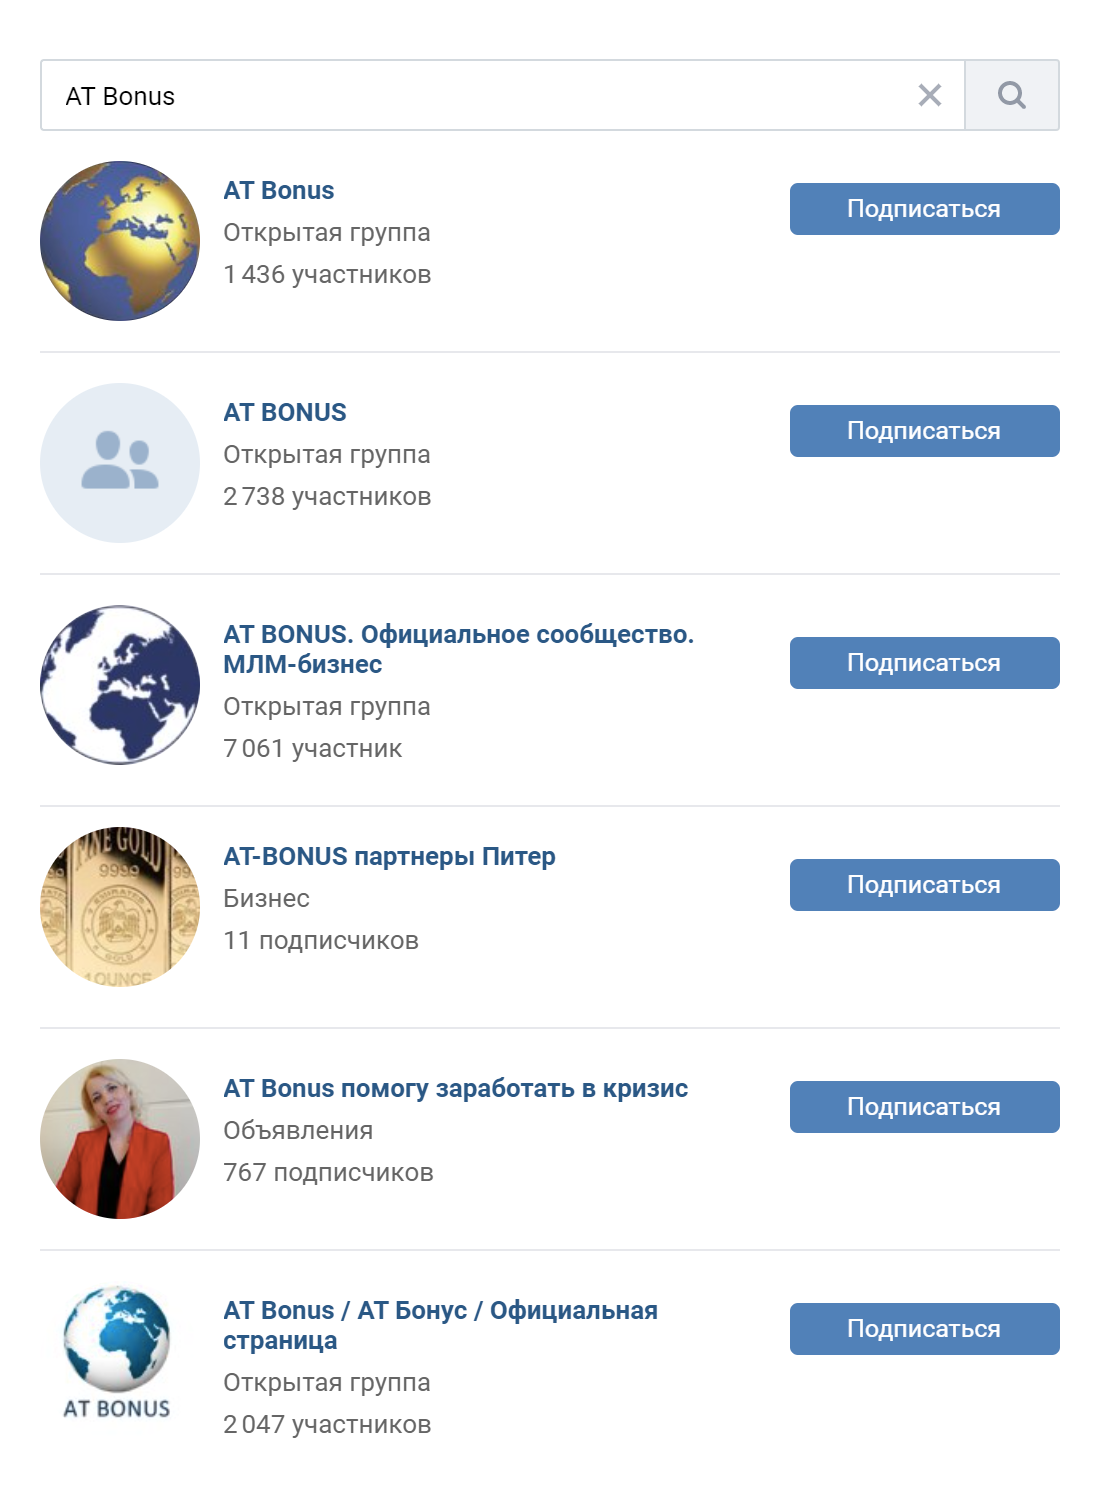 Поисковик «Вконтакте» по запросам AT Bonus и АТ Gold выдает 31 группу, большинство из них заброшены. Это может говорить о том, что консультанты разочаровались в идее и смирились с потерей своего взноса